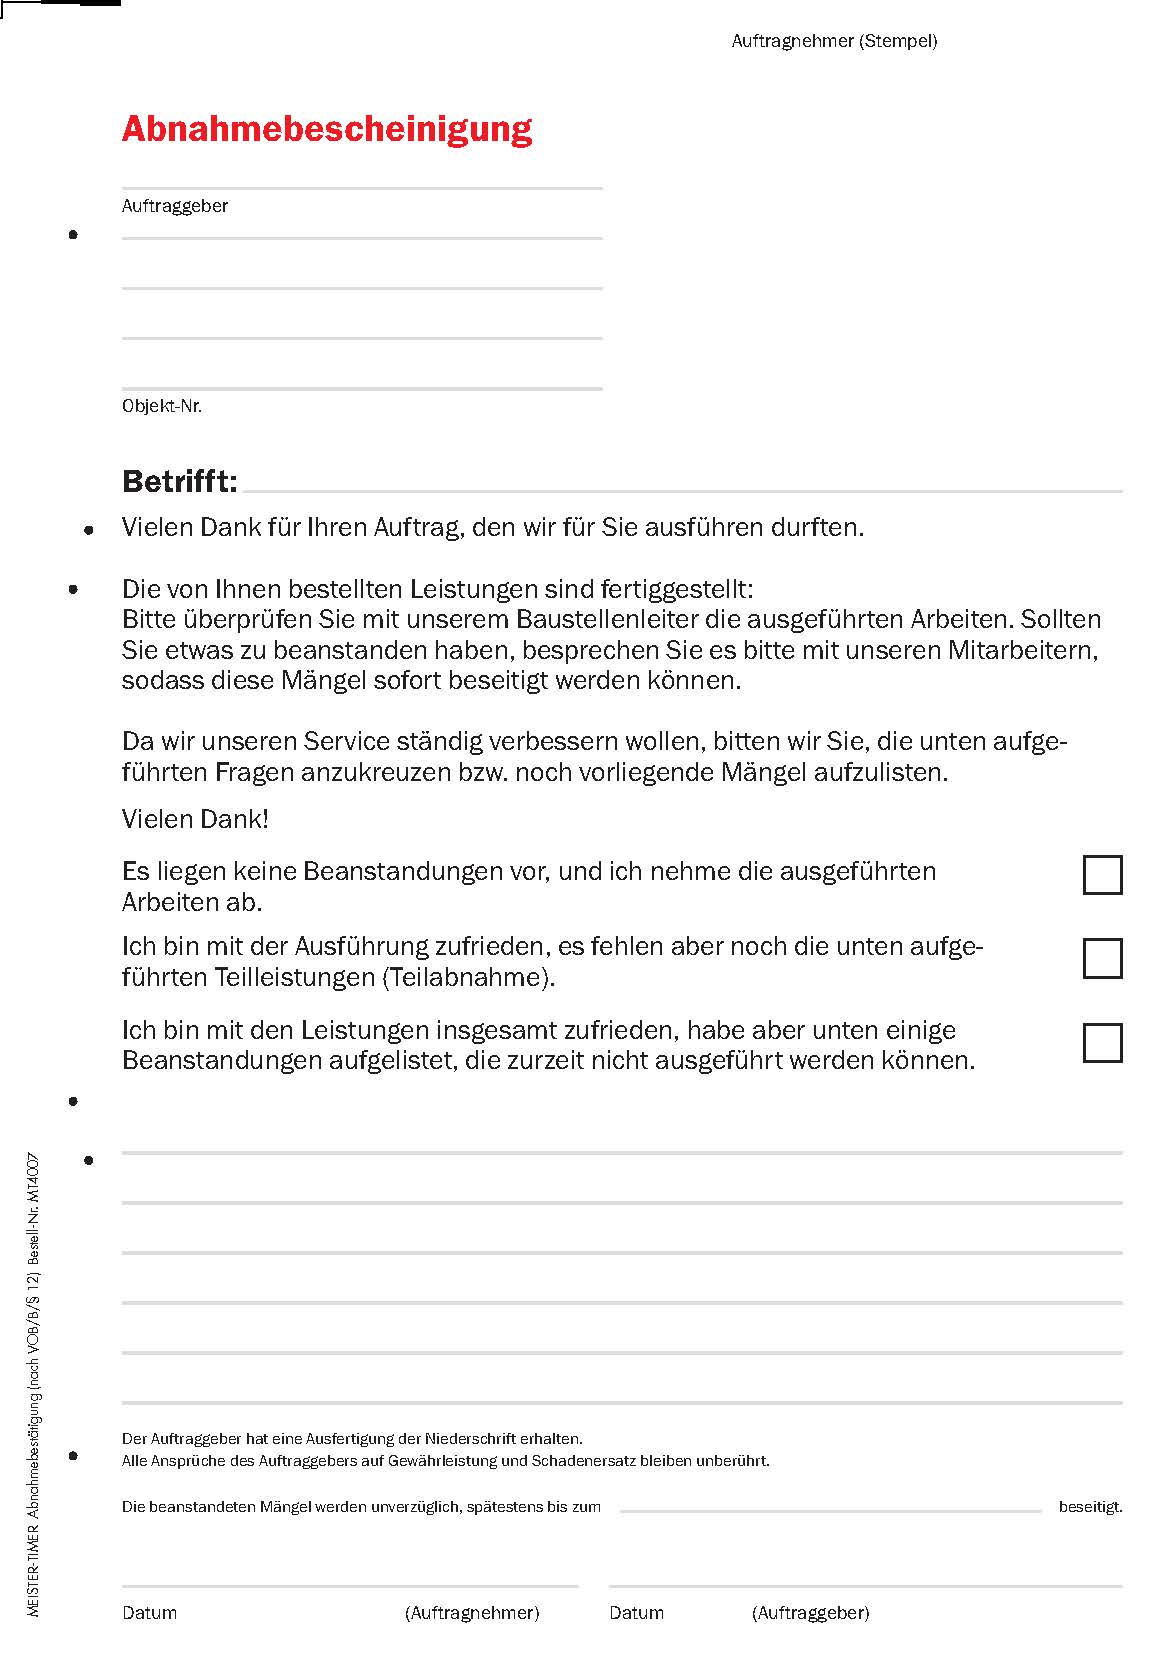 MeisterTimer edition "handwerk magazin" - Zeit- und Aufgabenplanungssystem